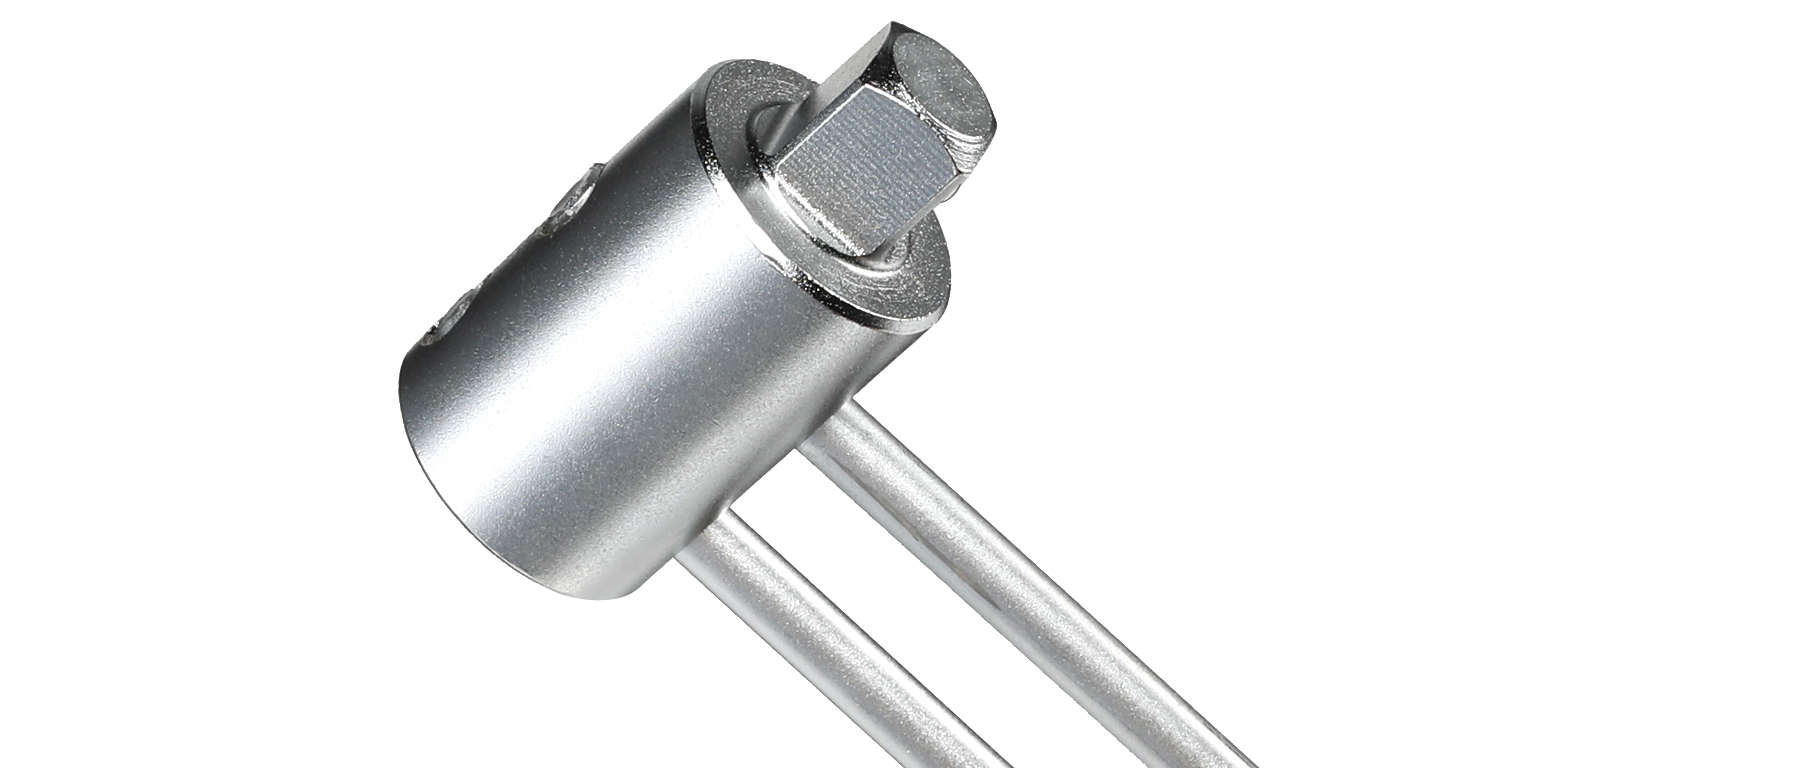 TW-1.2 Beam-Type Torque Wrench — 0–14 Nm